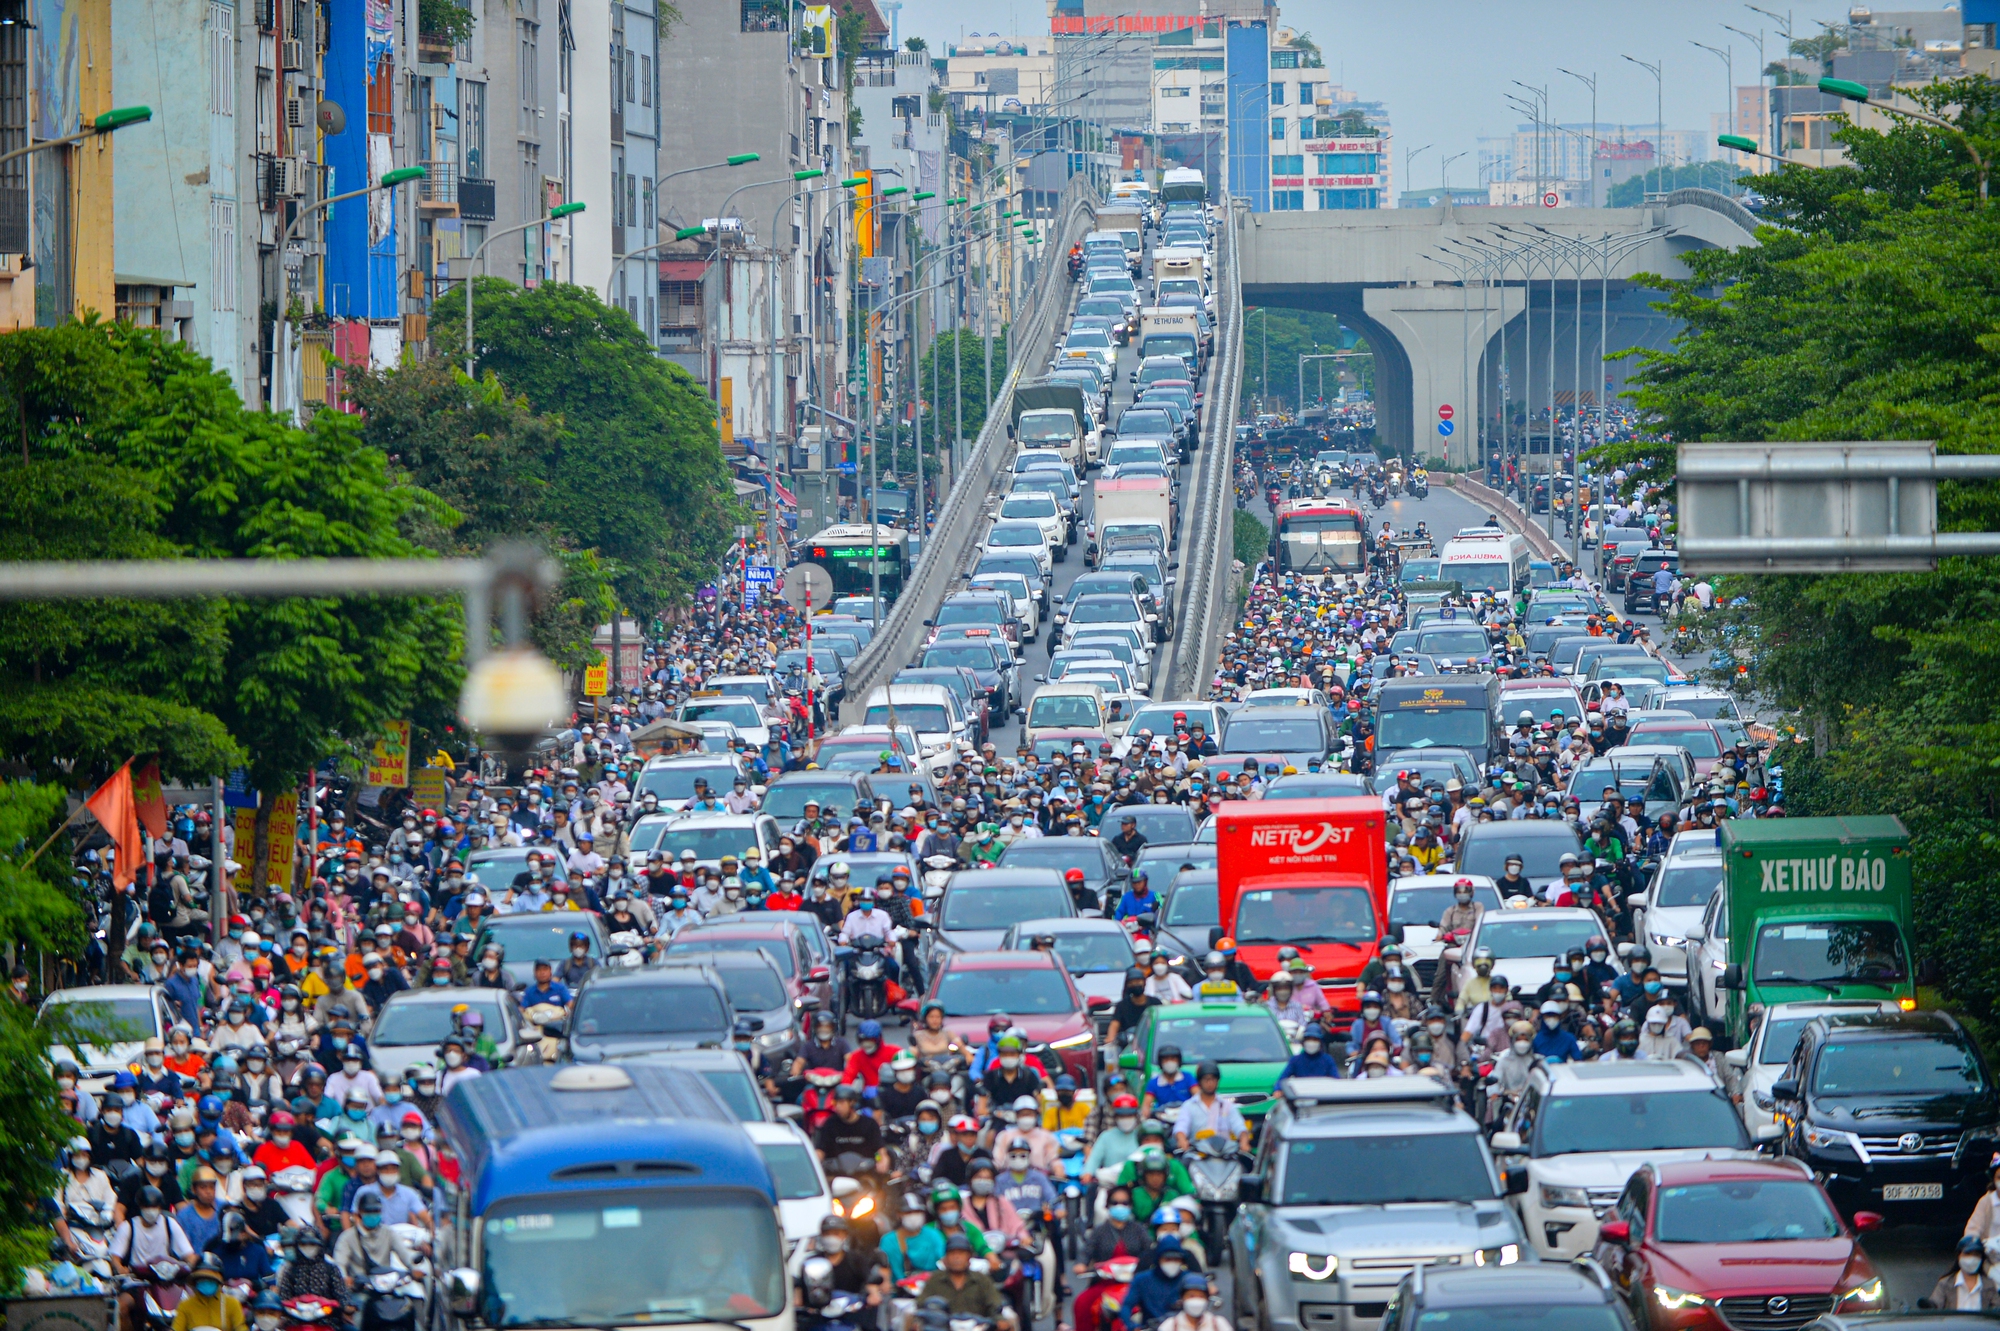 Sự văn minh trên đường chỉ có thể đạt được khi tất cả mọi người đều đáp ứng các quy định Luật Giao thông. Hành động của chúng ta khi tham gia giao thông còn phản ánh tình yêu thương và sự tôn trọng cho người khác. Hãy cùng xem hình ảnh về văn hóa giao thông tuyệt vời của người dân Việt Nam.